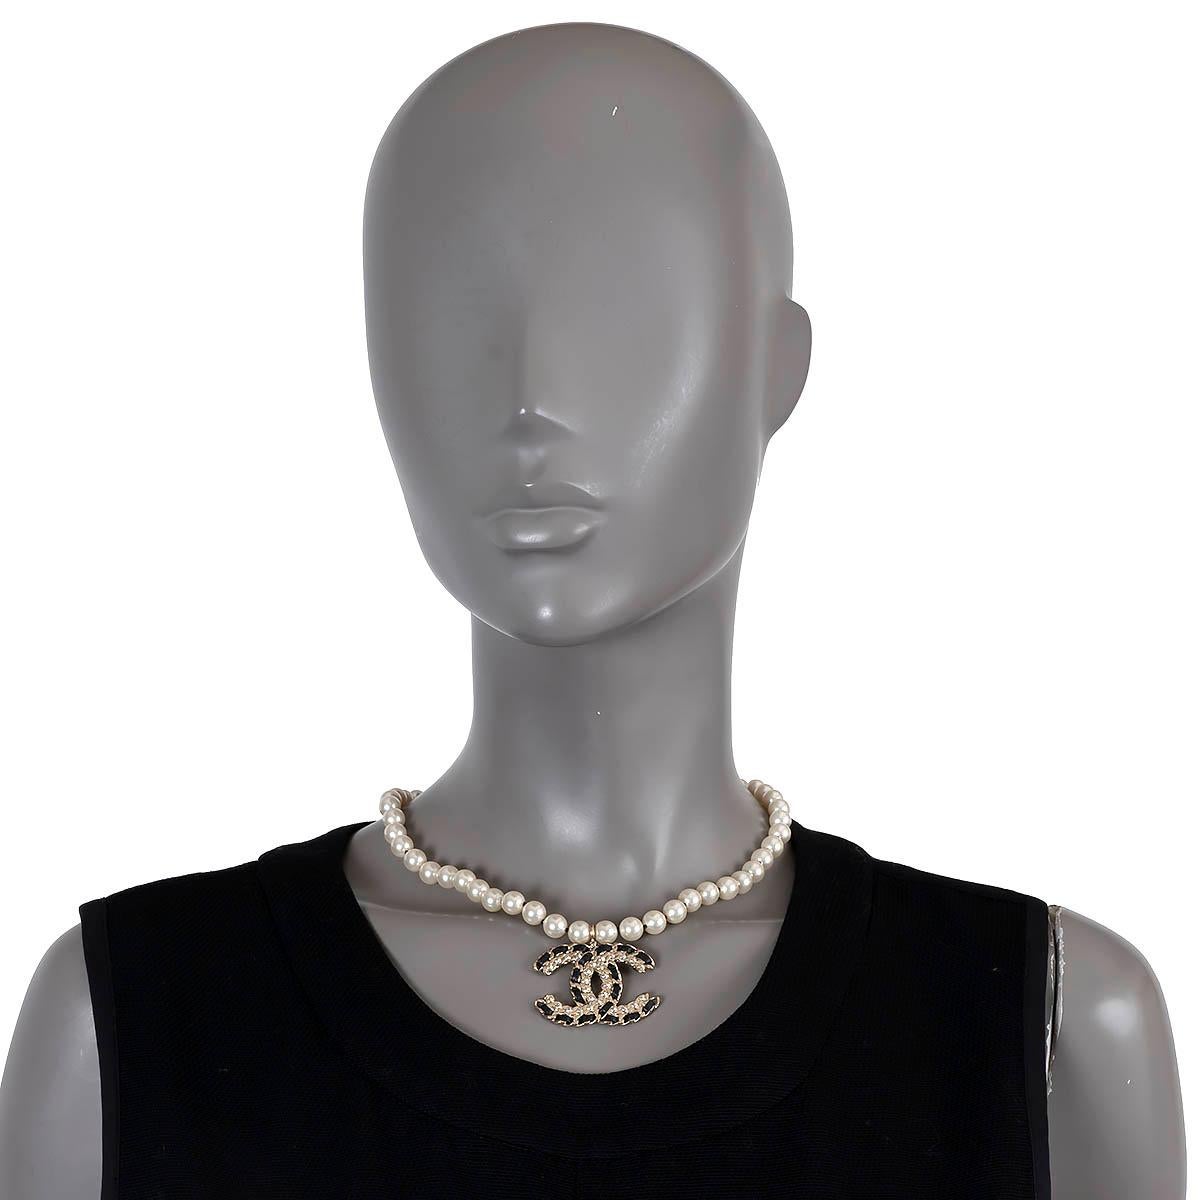 100% authentische kurze Chanel-Halskette aus perlmuttweißen Kunstperlen mit hellgoldfarbenem Metall, Kristallen und CC-Anhänger aus schwarzem Leder. Krallenverschluss mit verstellbarer Kette. Wurde getragen und ist in ausgezeichnetem Zustand. Wird